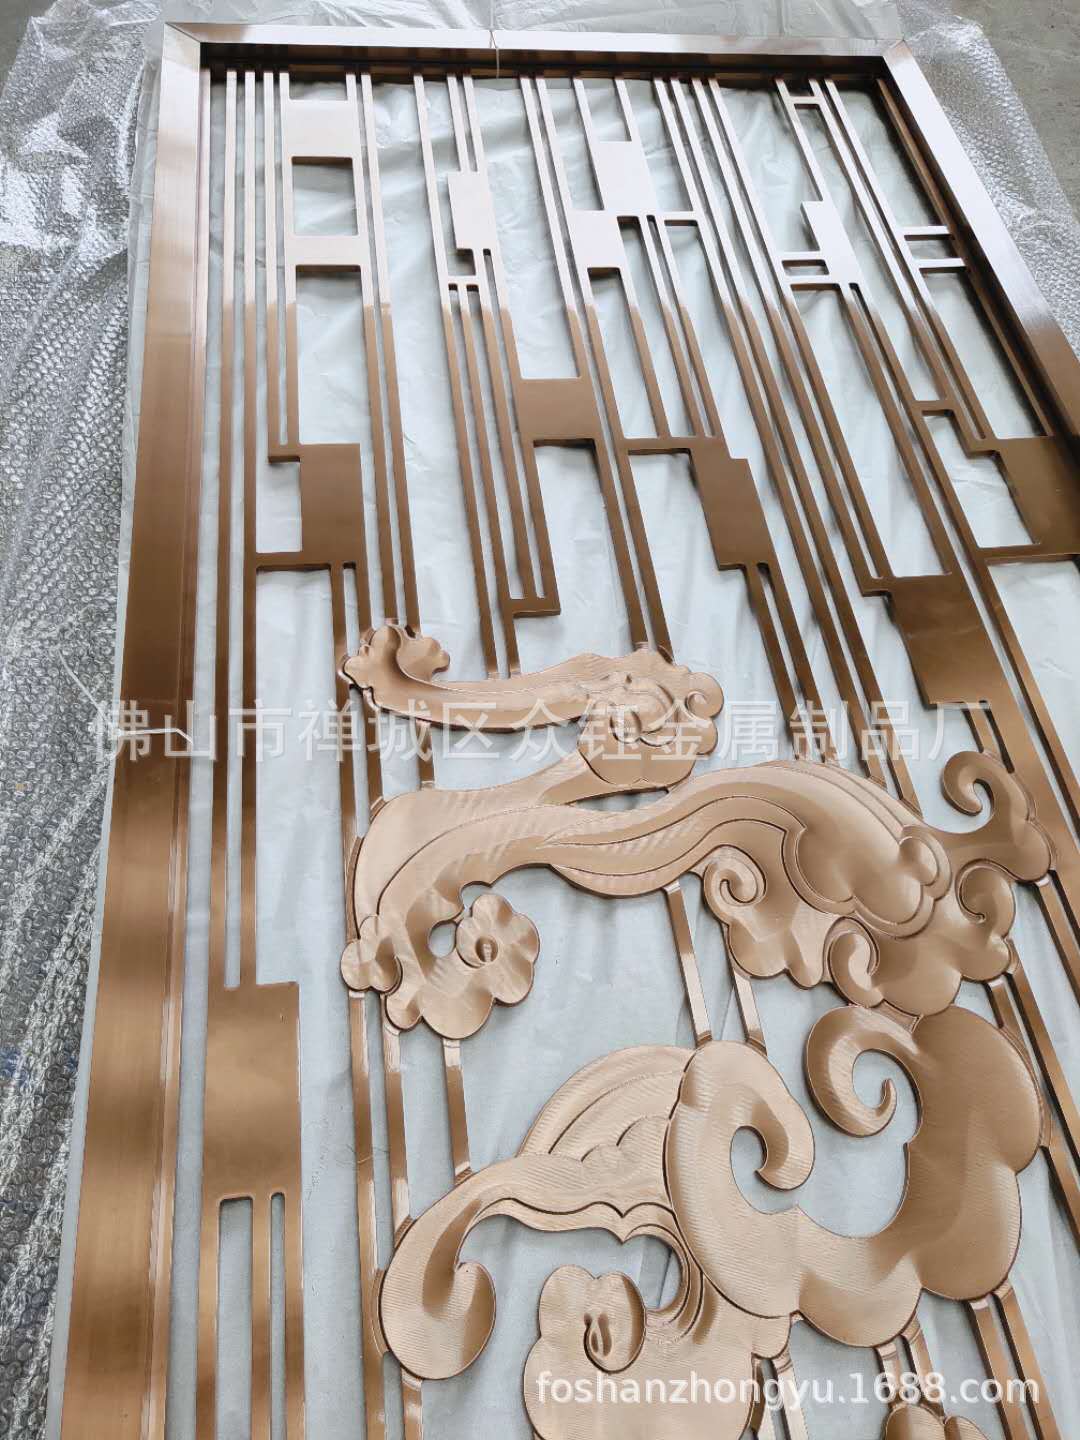 厂家直销 铝板镂空雕刻祥云屏风表面红古铜大气古典示例图3